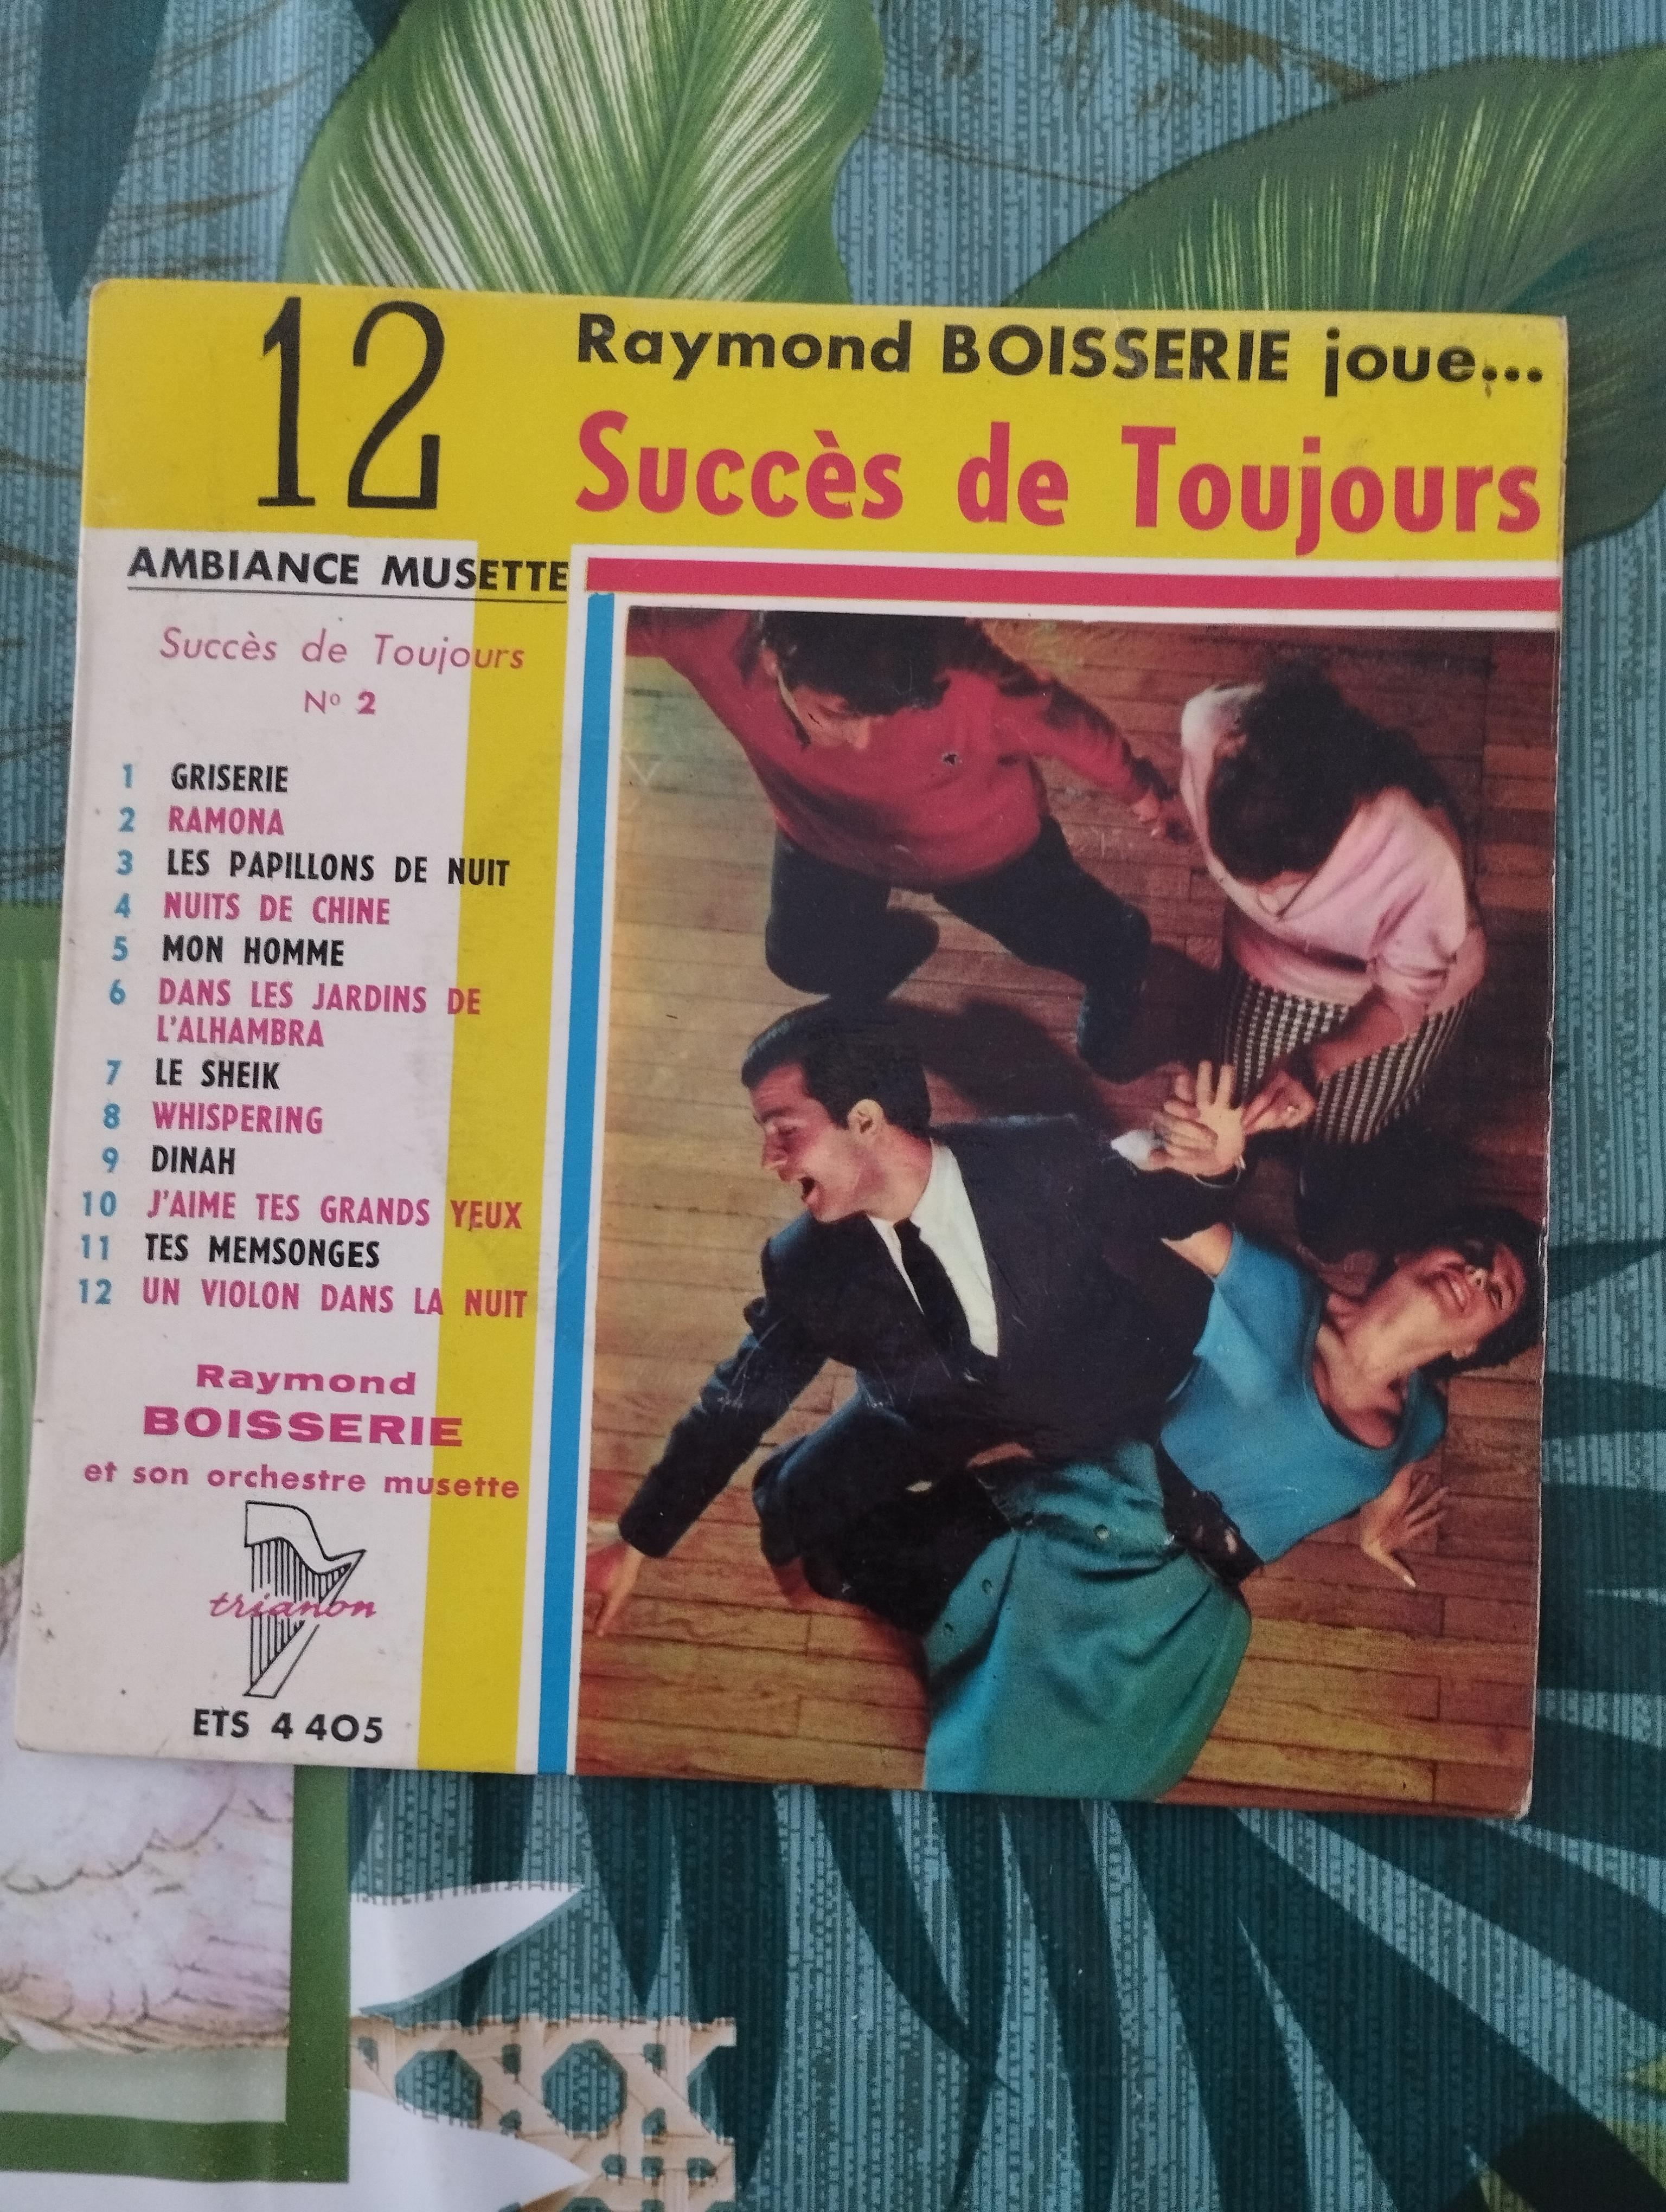 troc de troc disque vinyle 45t raymond boisserie - ambiance musette image 0